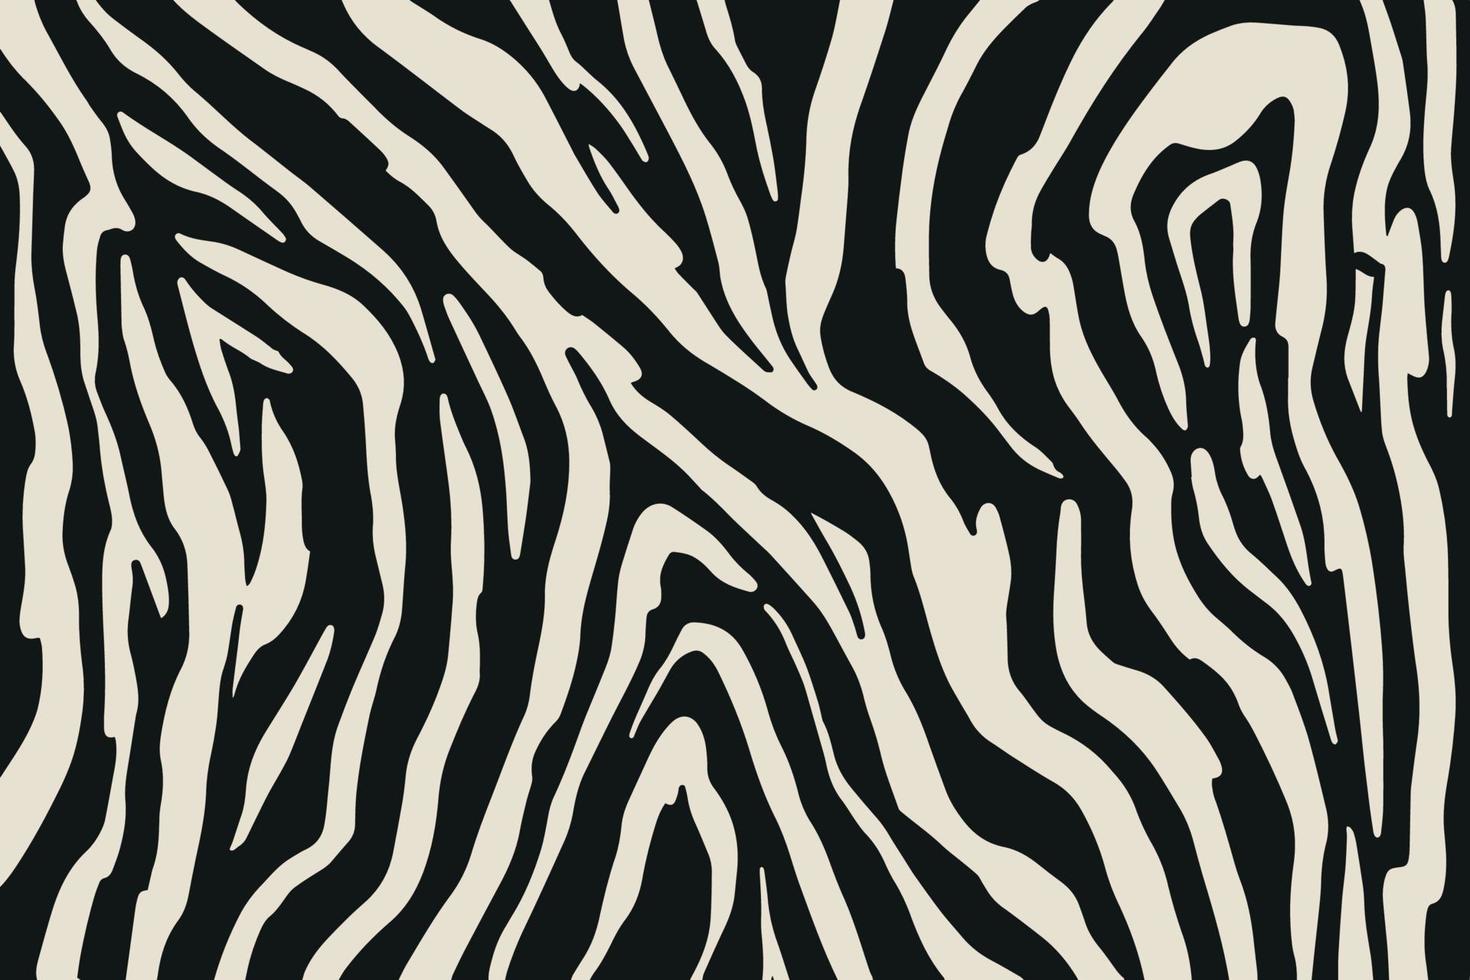 Vektor trendiger Zebra-Pelzdruck. Tierfell, Vektorhintergrund für Stoffdesign, Packpapier, Textilien und Tapeten. exotische wilde animalische hautstruktur